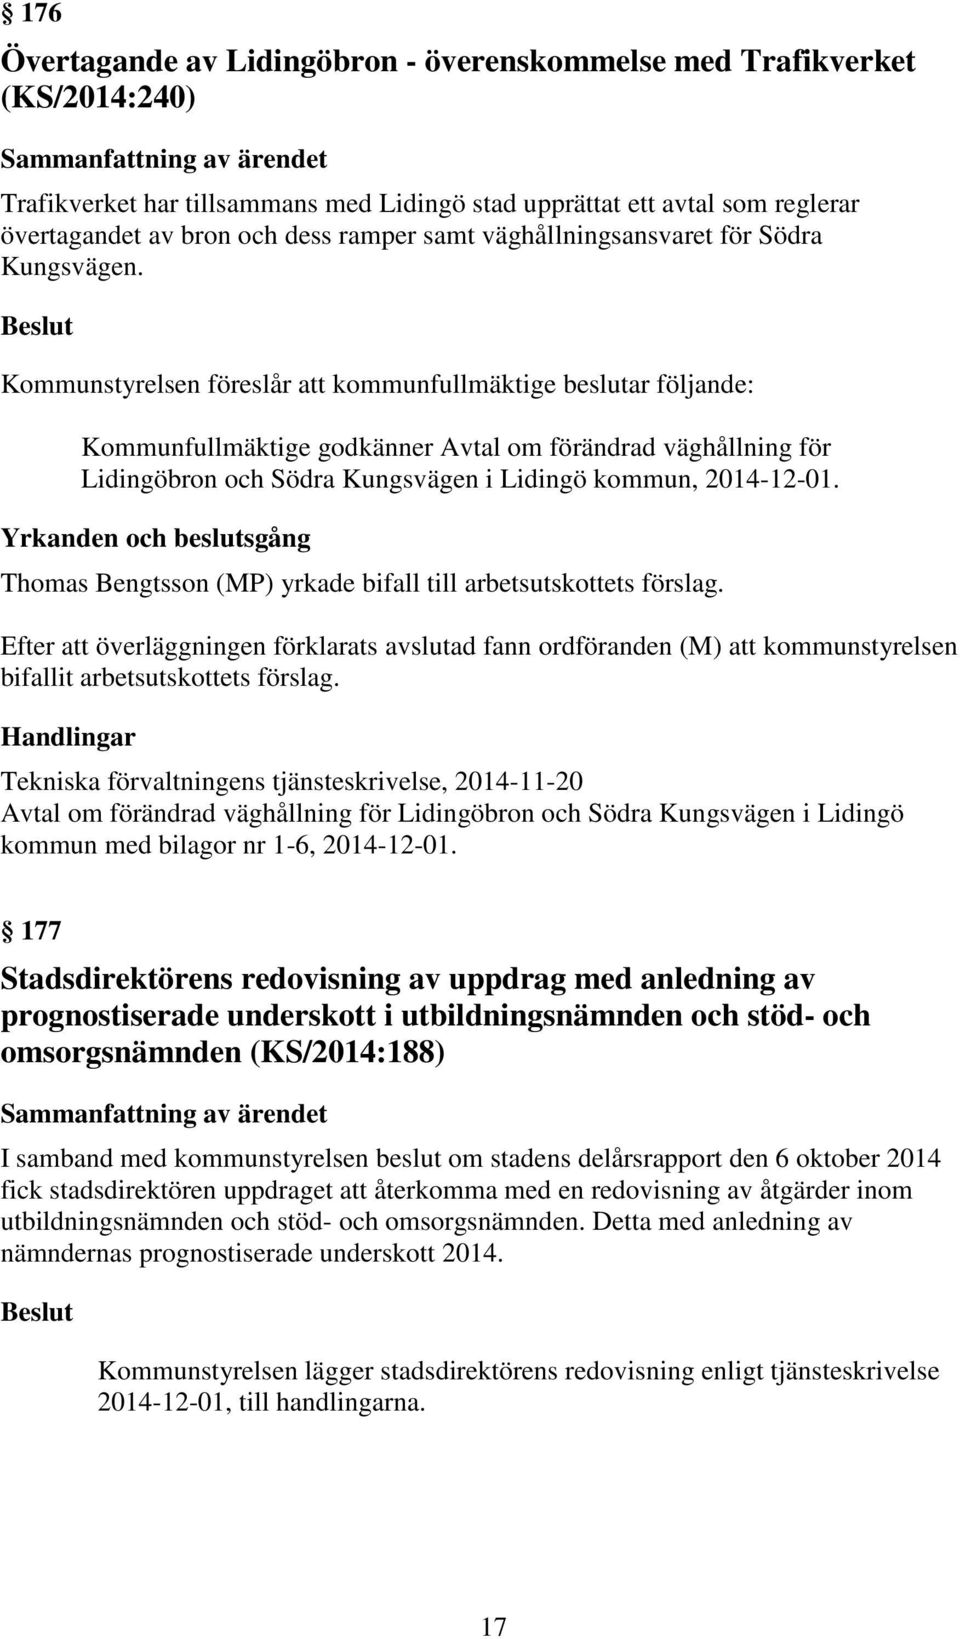 Beslut Kommunstyrelsen föreslår att kommunfullmäktige beslutar följande: Kommunfullmäktige godkänner Avtal om förändrad väghållning för Lidingöbron och Södra Kungsvägen i Lidingö kommun, 2014-12-01.